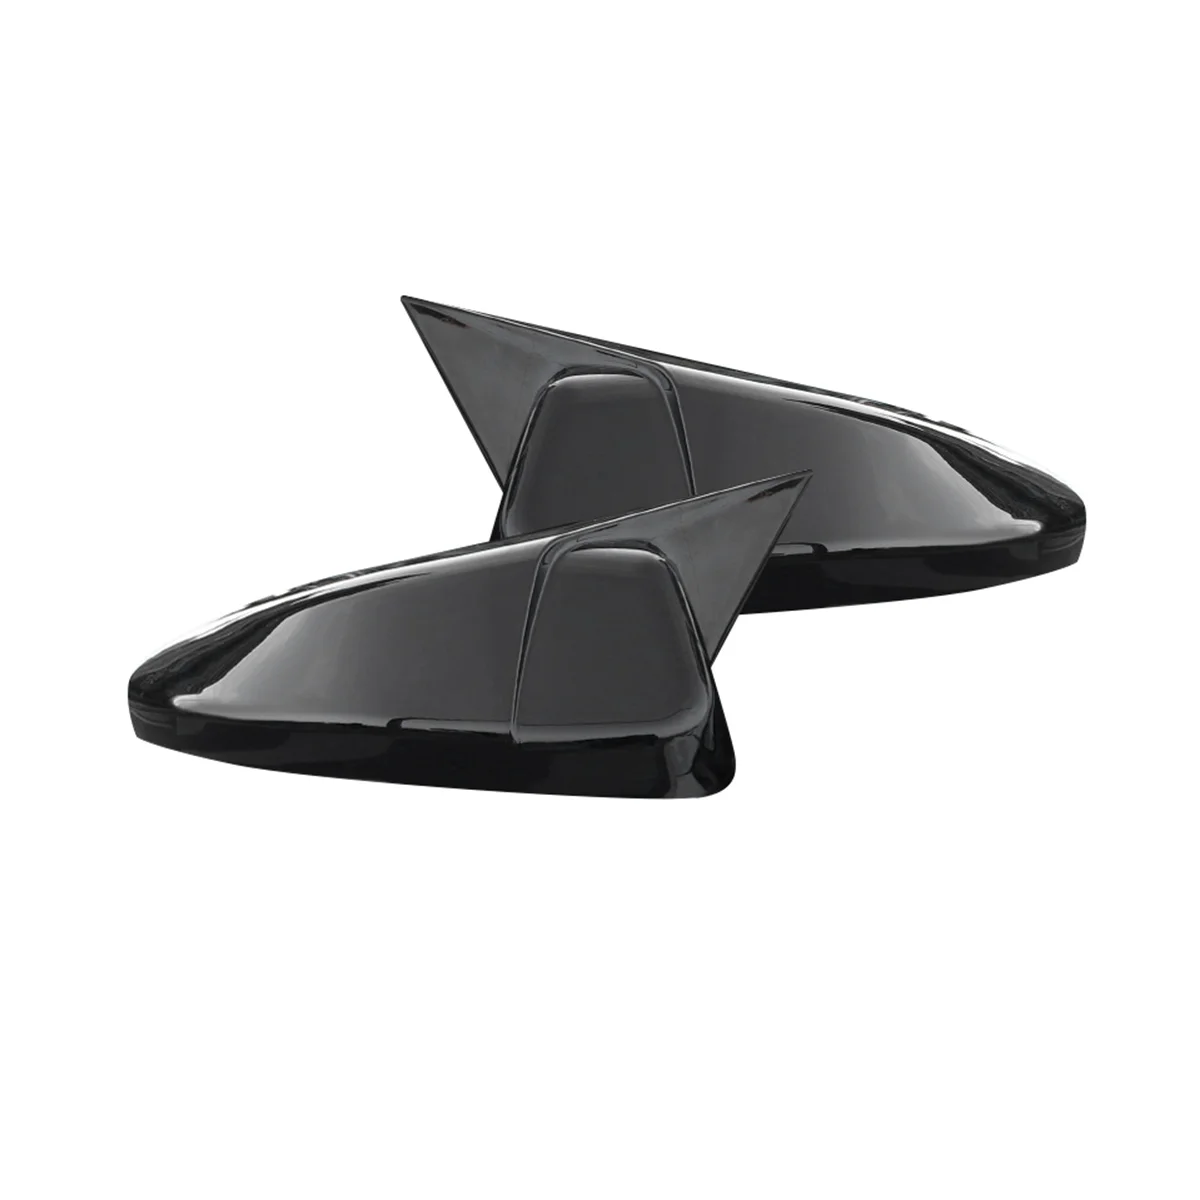 

Зеркальная крышка Bullhorn для 10-го поколения Accord INSPIRE 260 и гибридной версии, зеркало заднего вида ярко-черного цвета